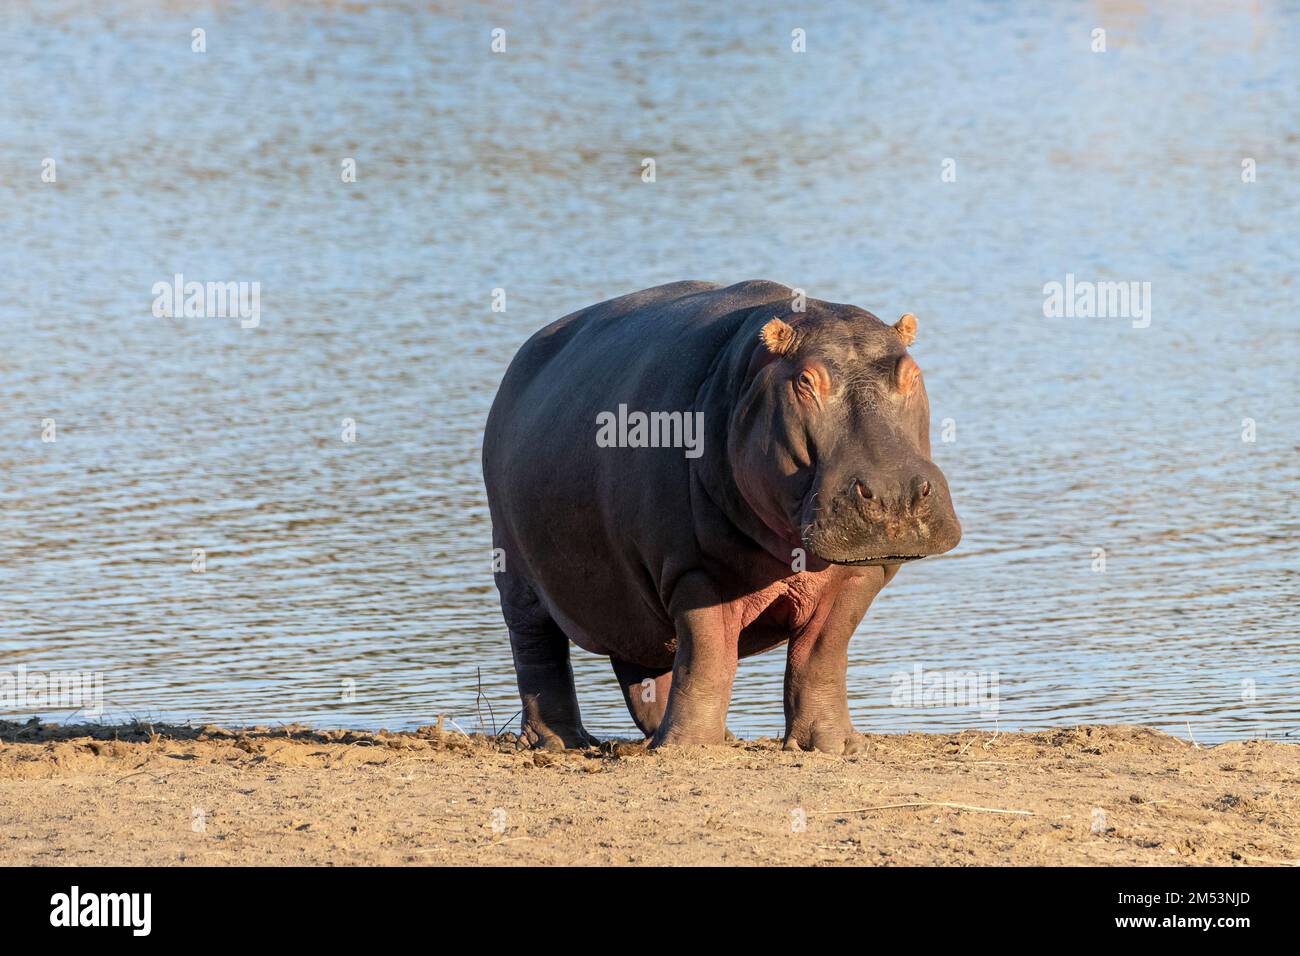 Hippopotamus (Hippopotamus amphibius) sur la rive du lac près du coucher du soleil, Mabula, Afrique du Sud Banque D'Images